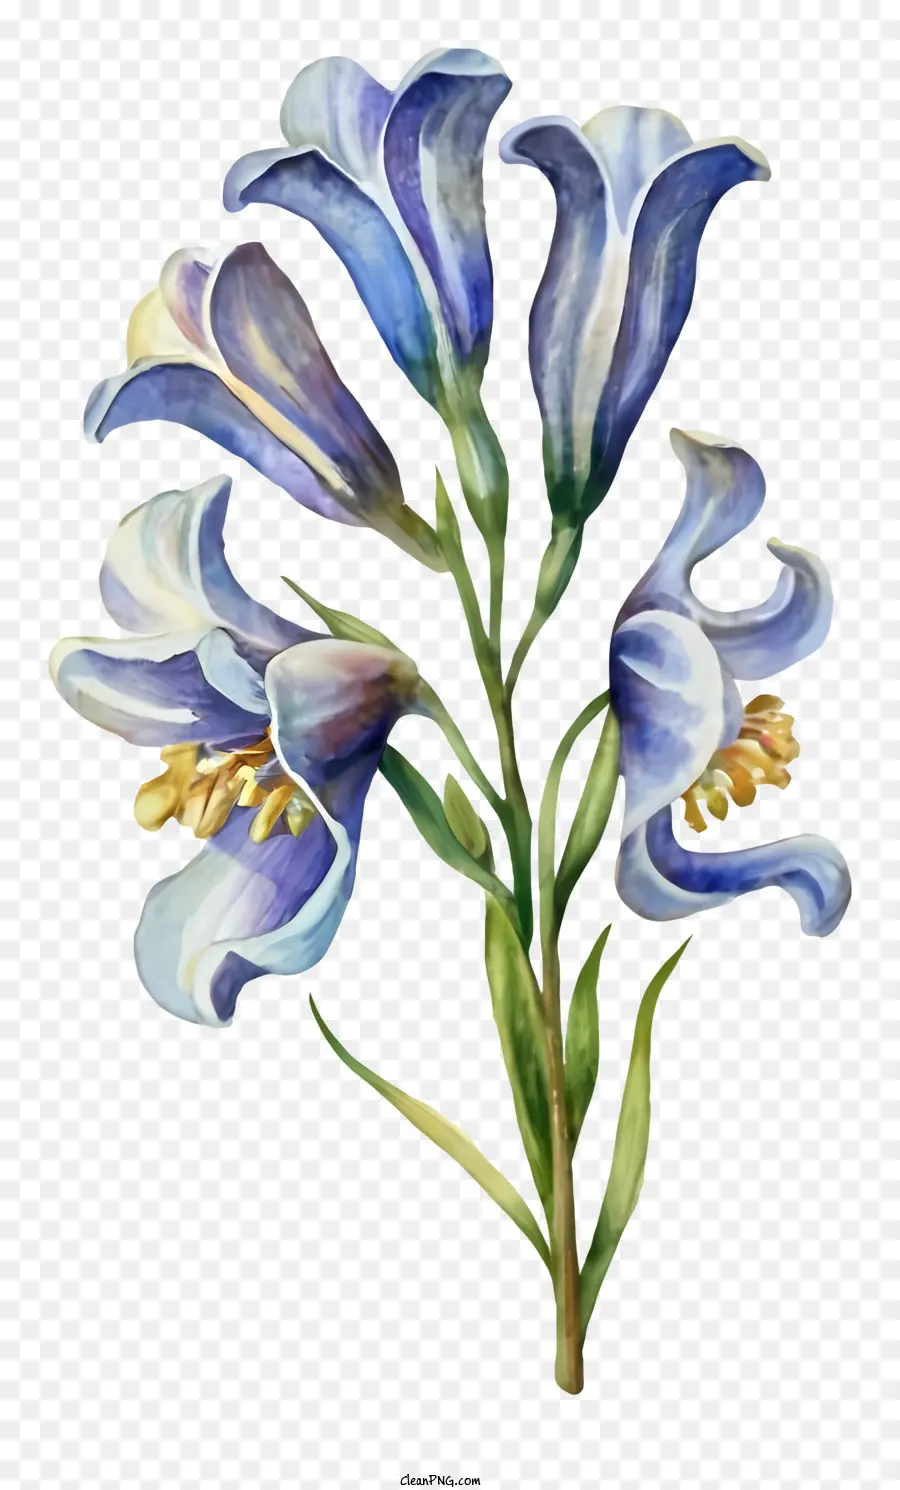 Blaue Blume - Aquarellmalerei von blauer Blume mit gekräuselten Blättern